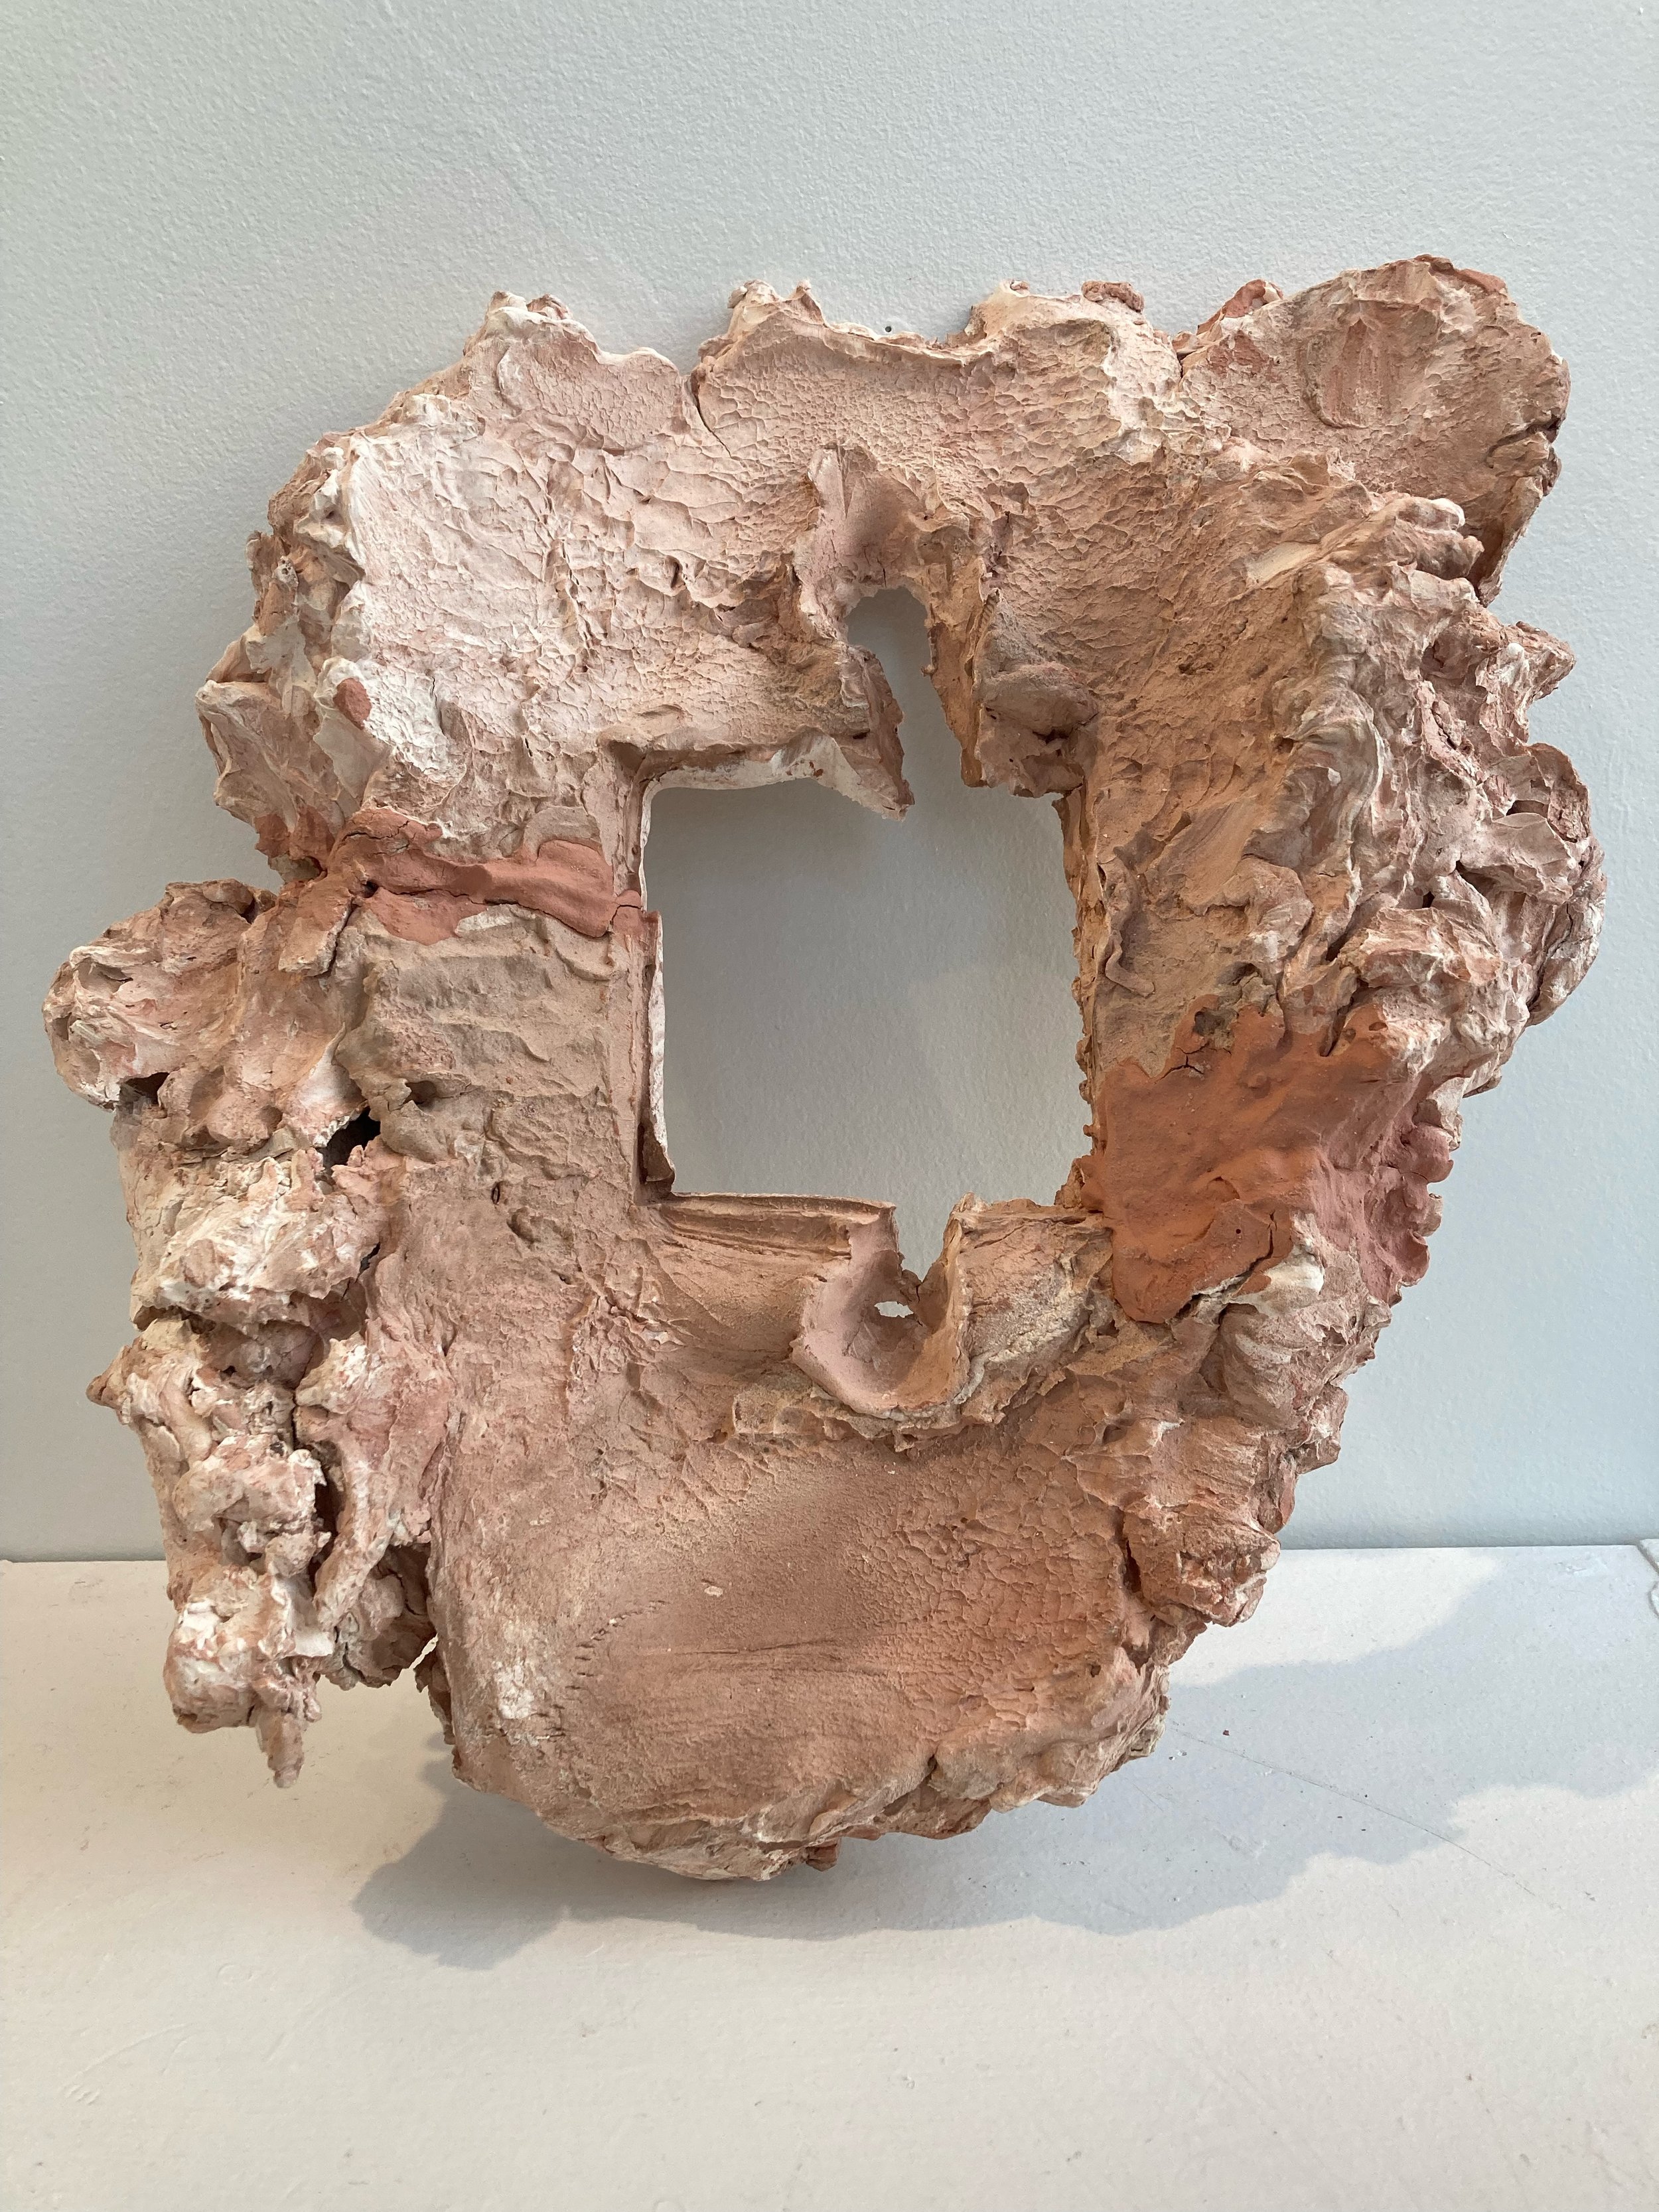  Frame, Unglazed ceramic, 11” X 8” X 2”, 2021 